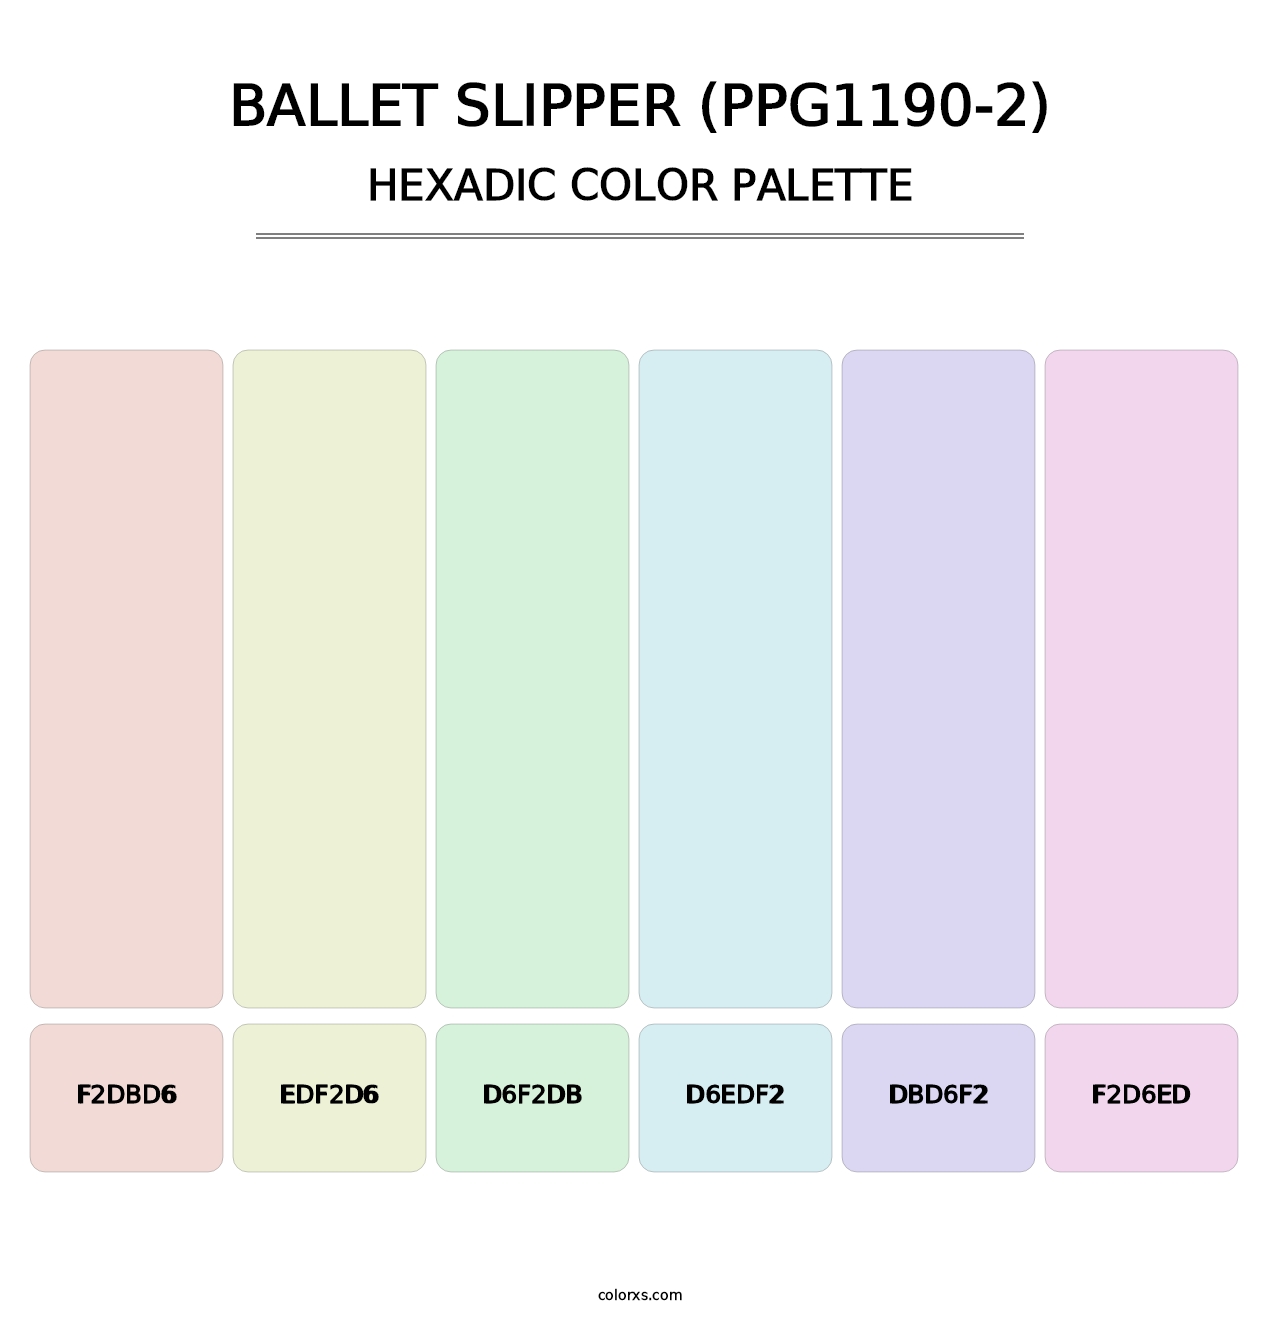 Ballet Slipper (PPG1190-2) - Hexadic Color Palette